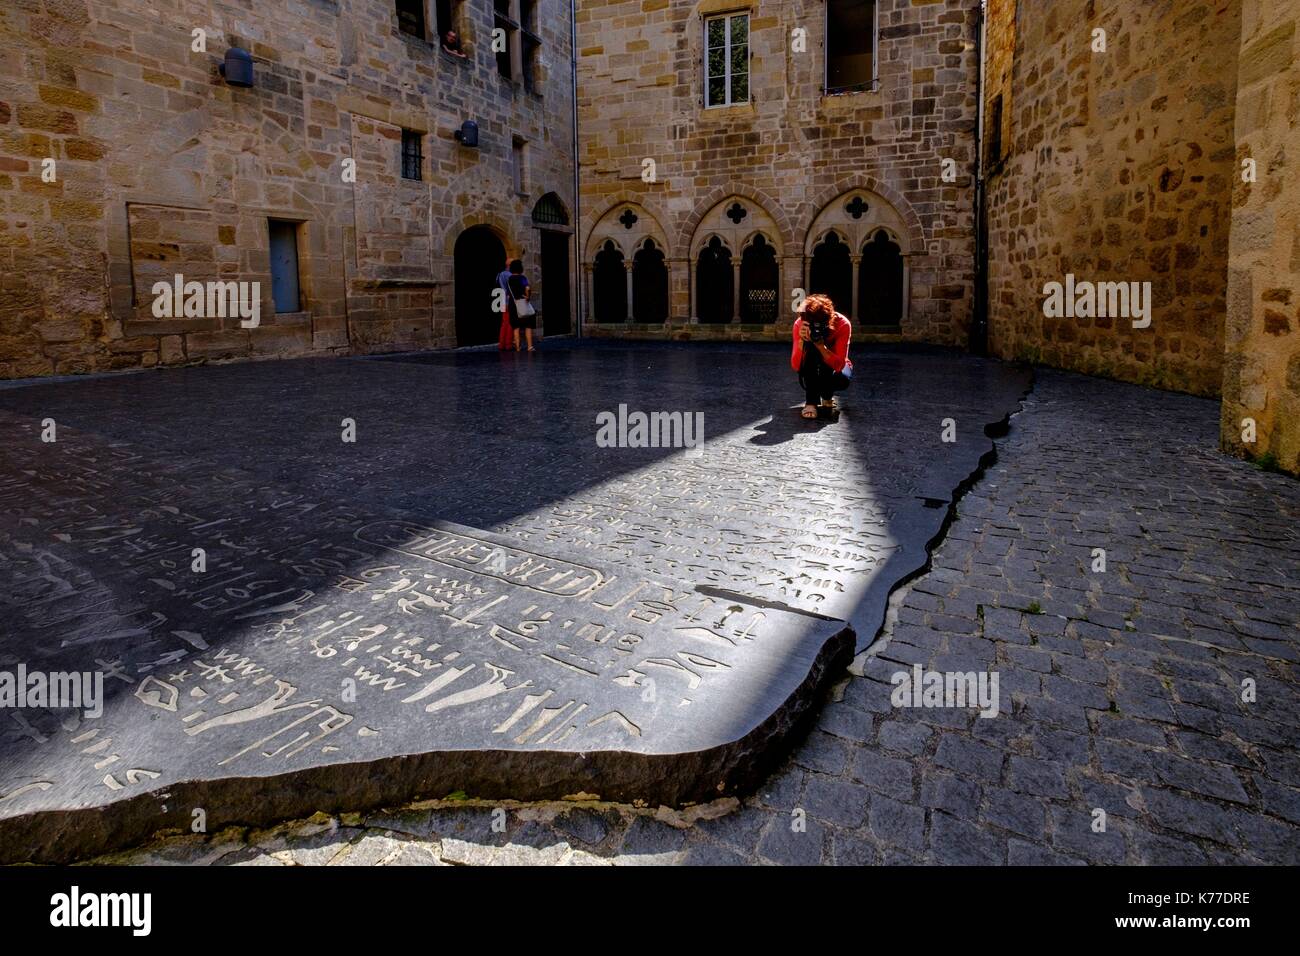 Francia, Lot, Quercy, Figeac, piazza des Ecritures, riproduzione della rosetta stone decifrato da Champollion Foto Stock